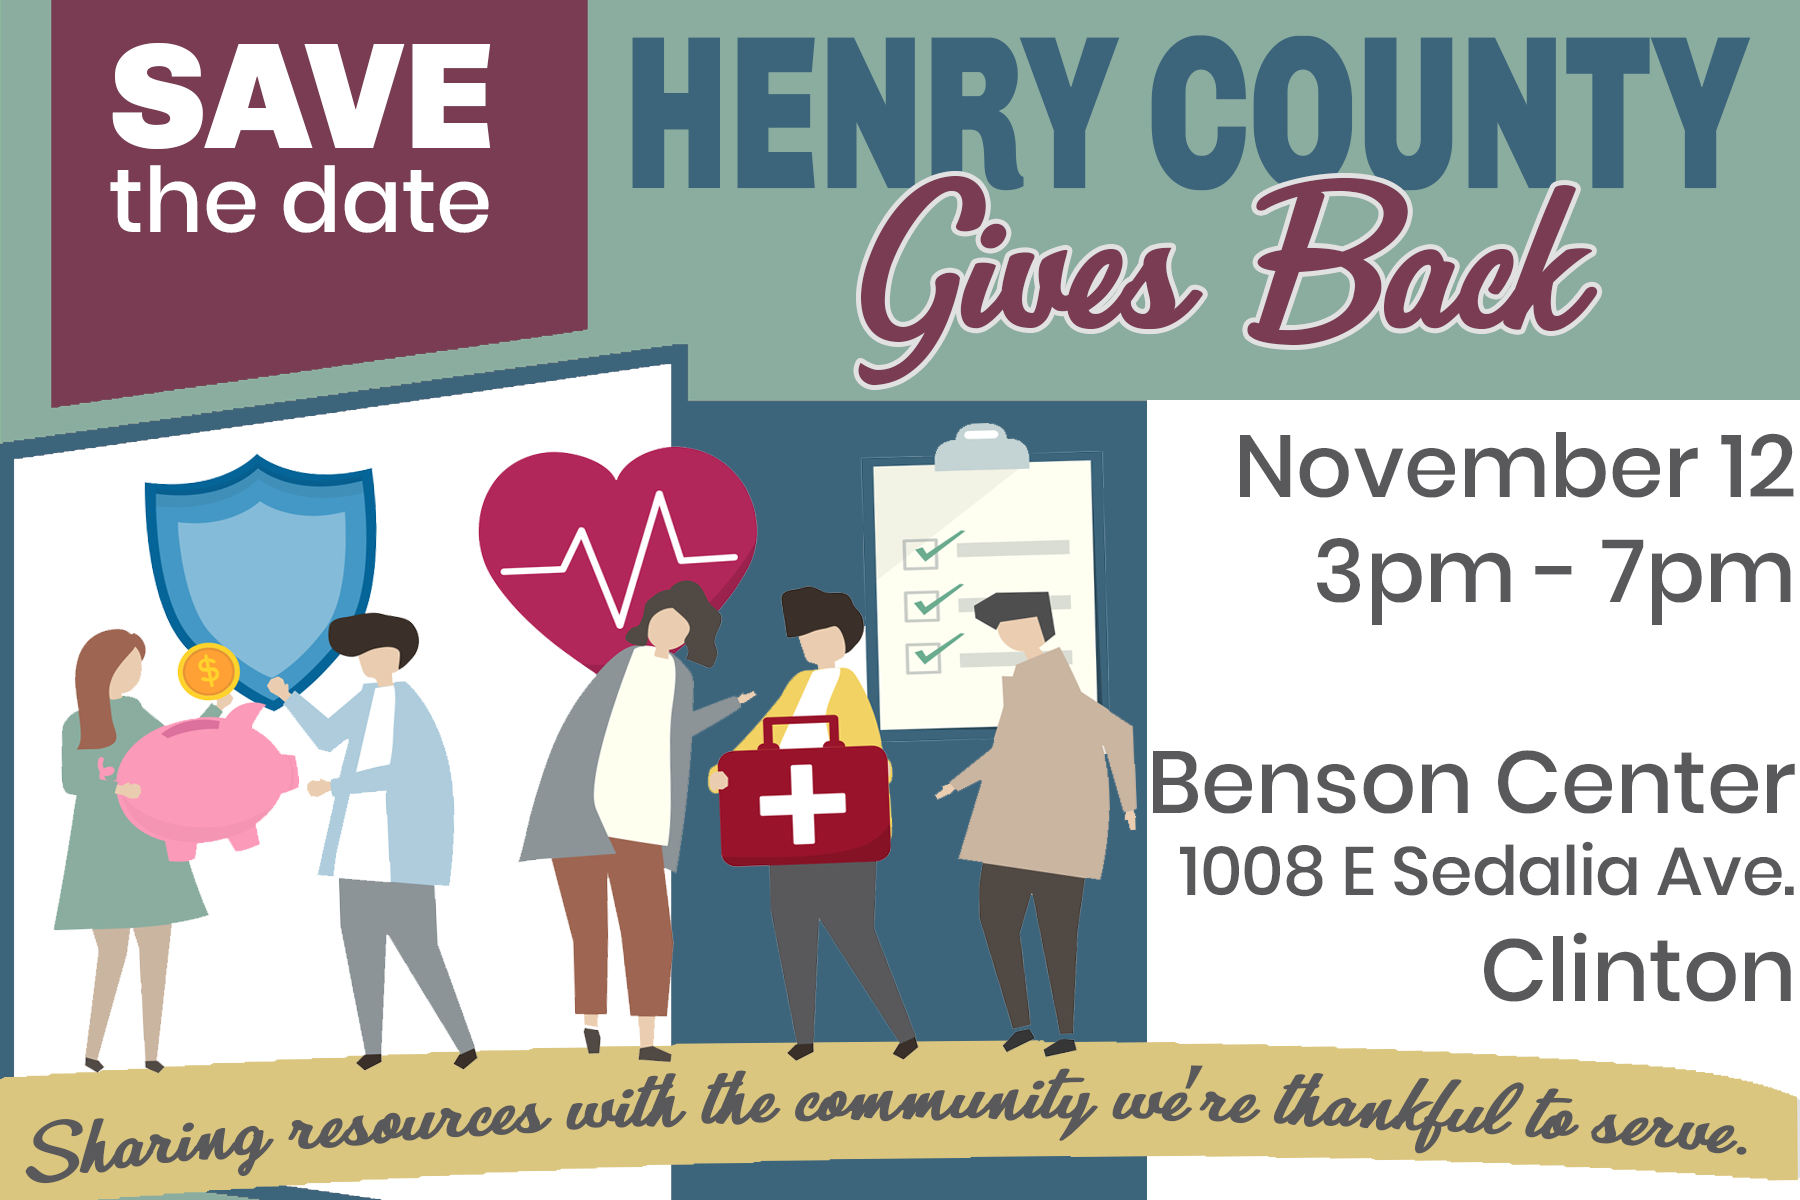 Henry County Gives Back @ 1008 E. Sedalia Ave. Clinton, MO 64735